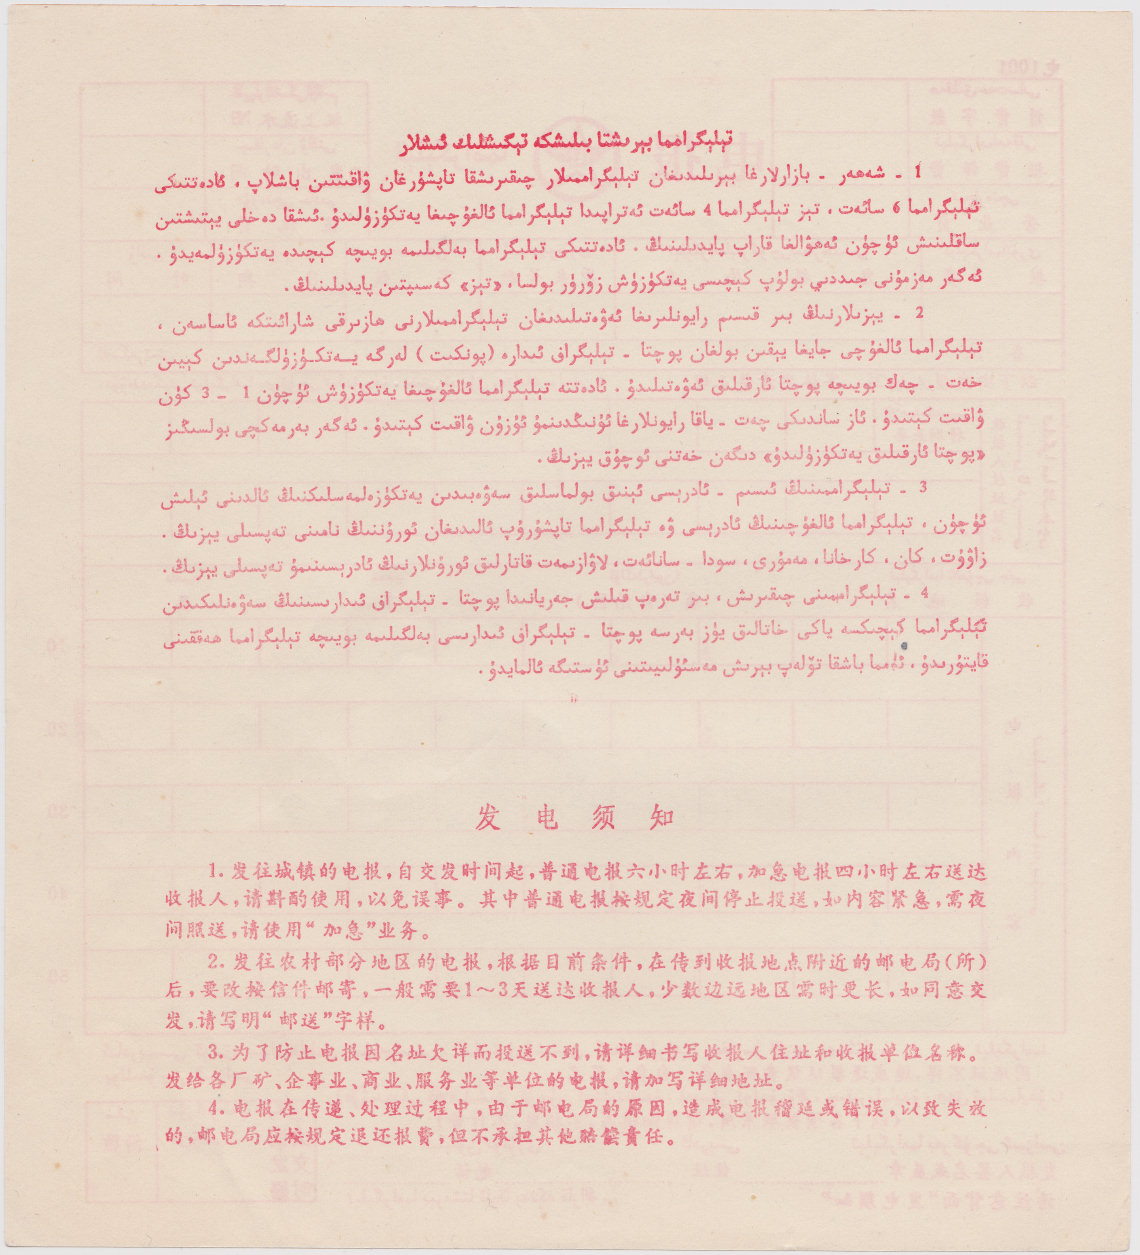 Xinjiang form 1001 - back